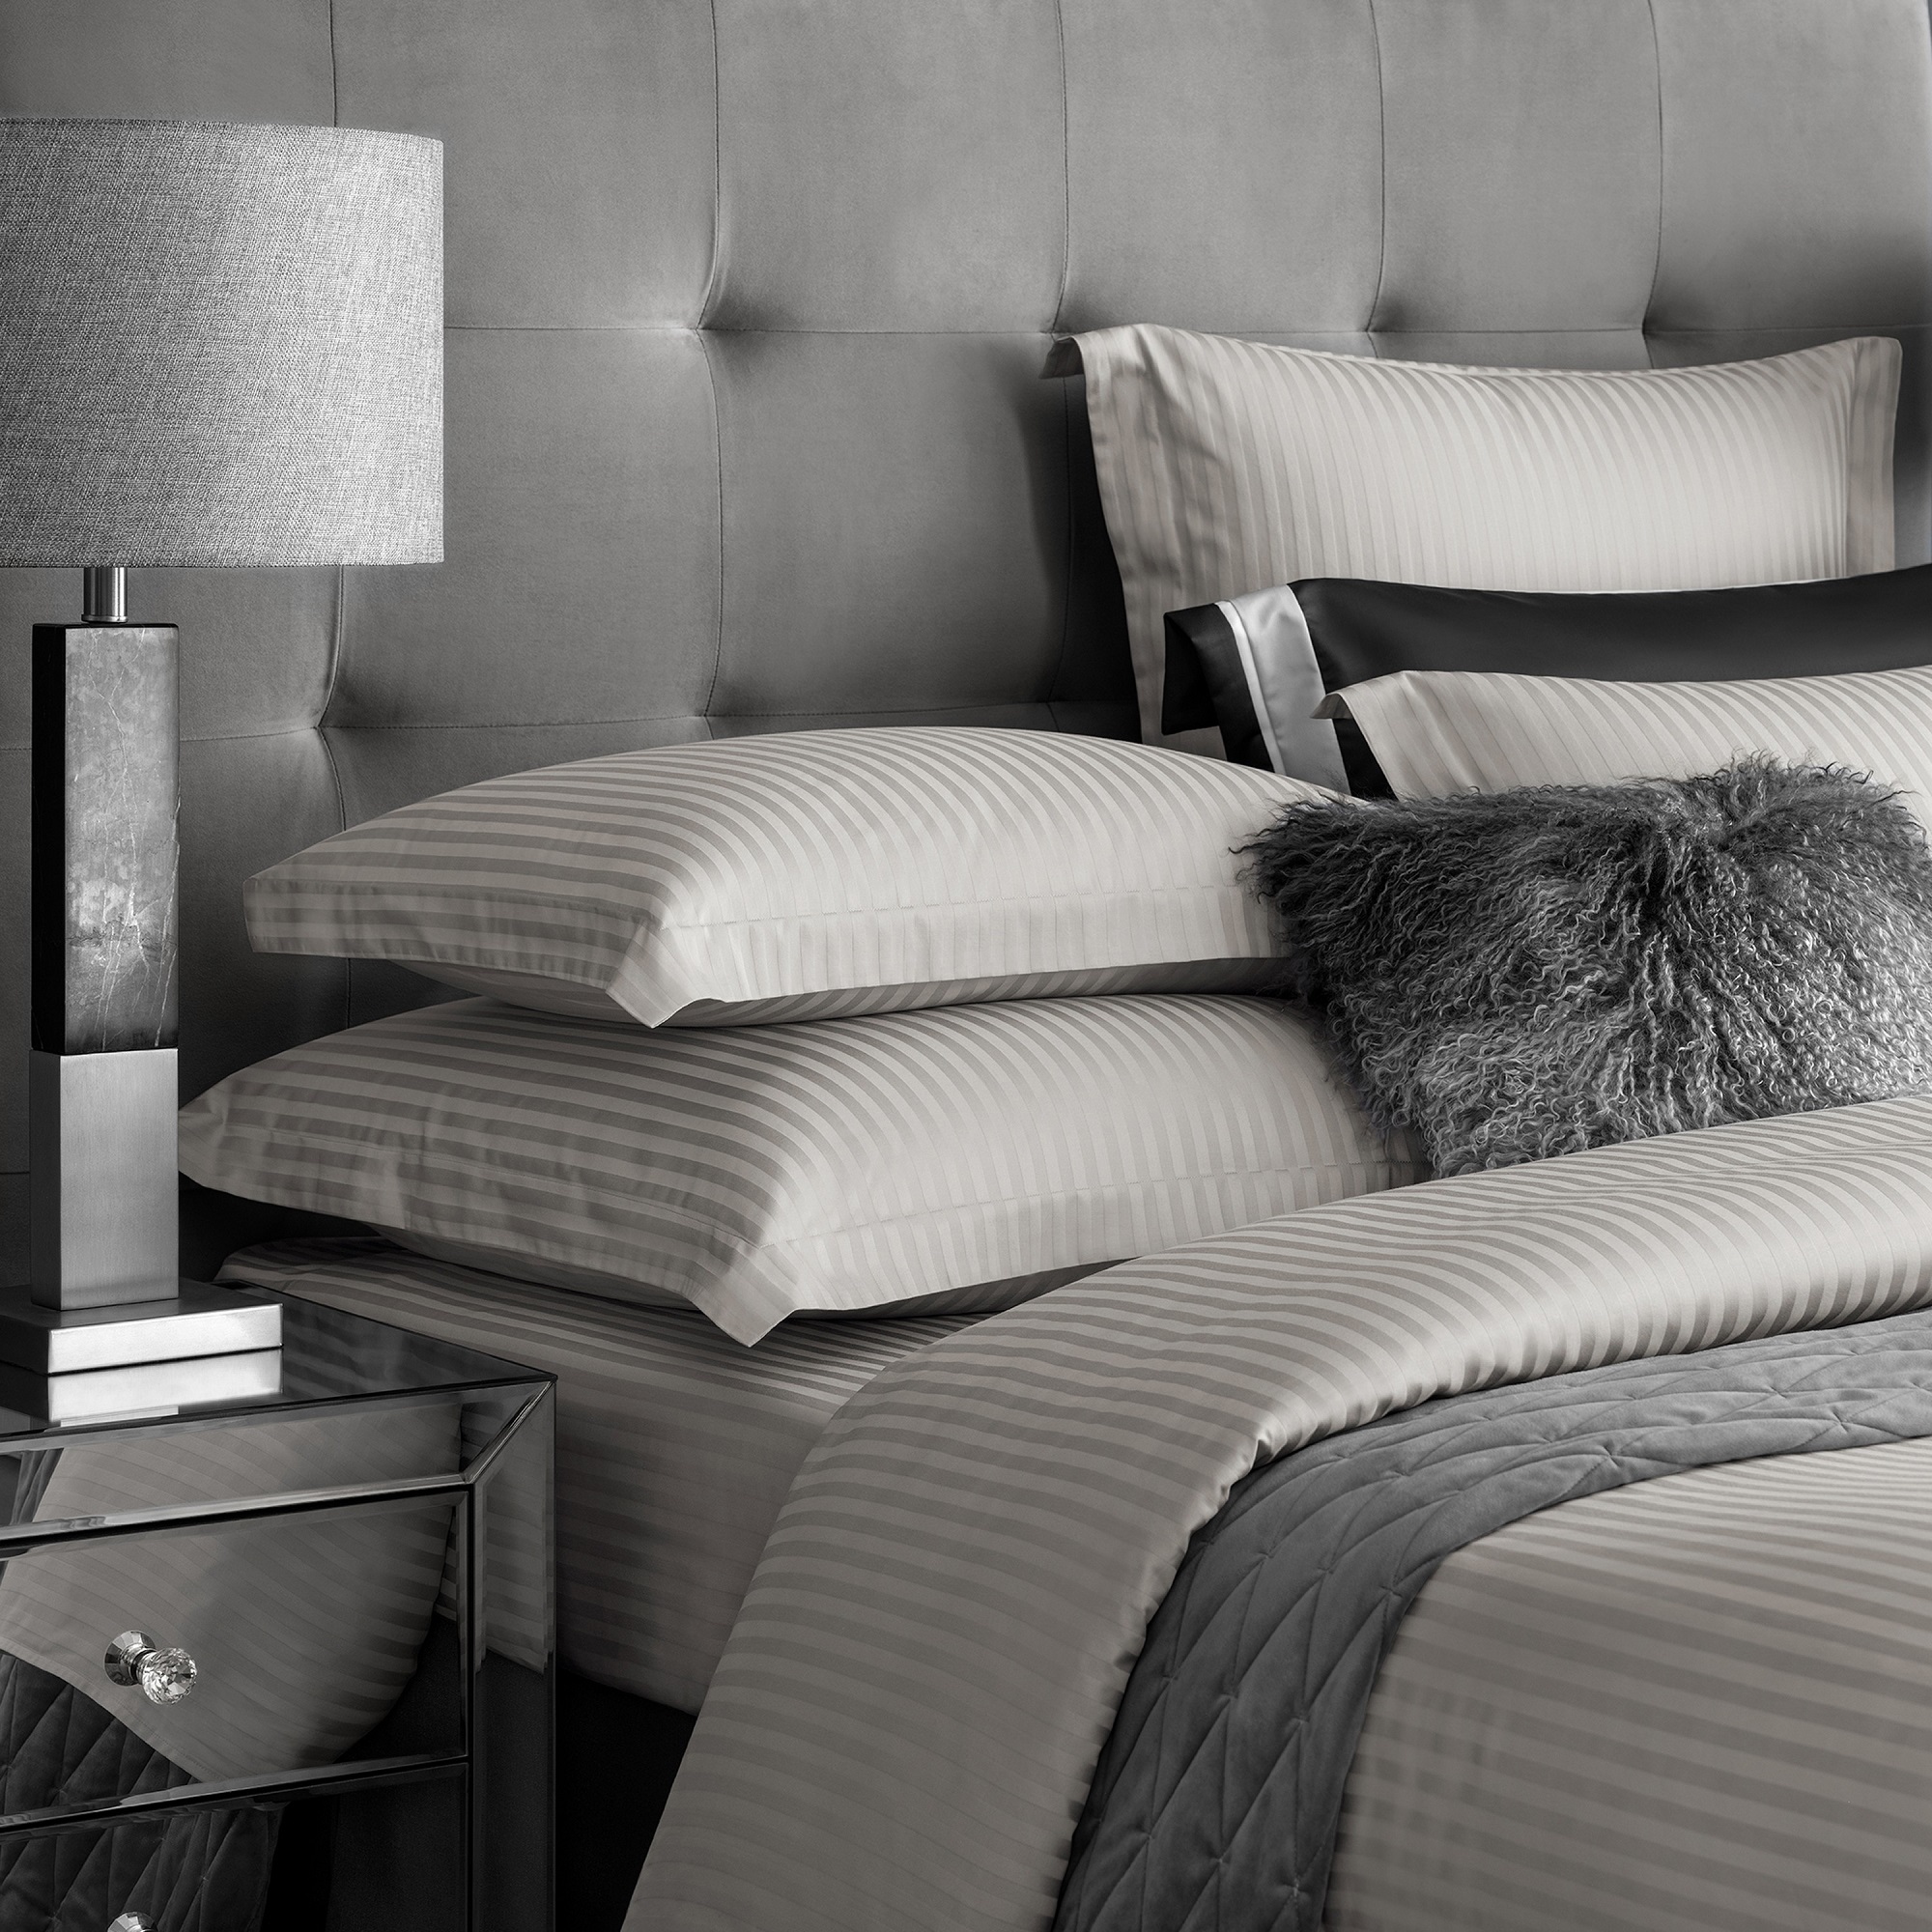 Комплект постельного белья Togas Ларье серый Двуспальный кинг сайз, размер Кинг сайз - фото 3